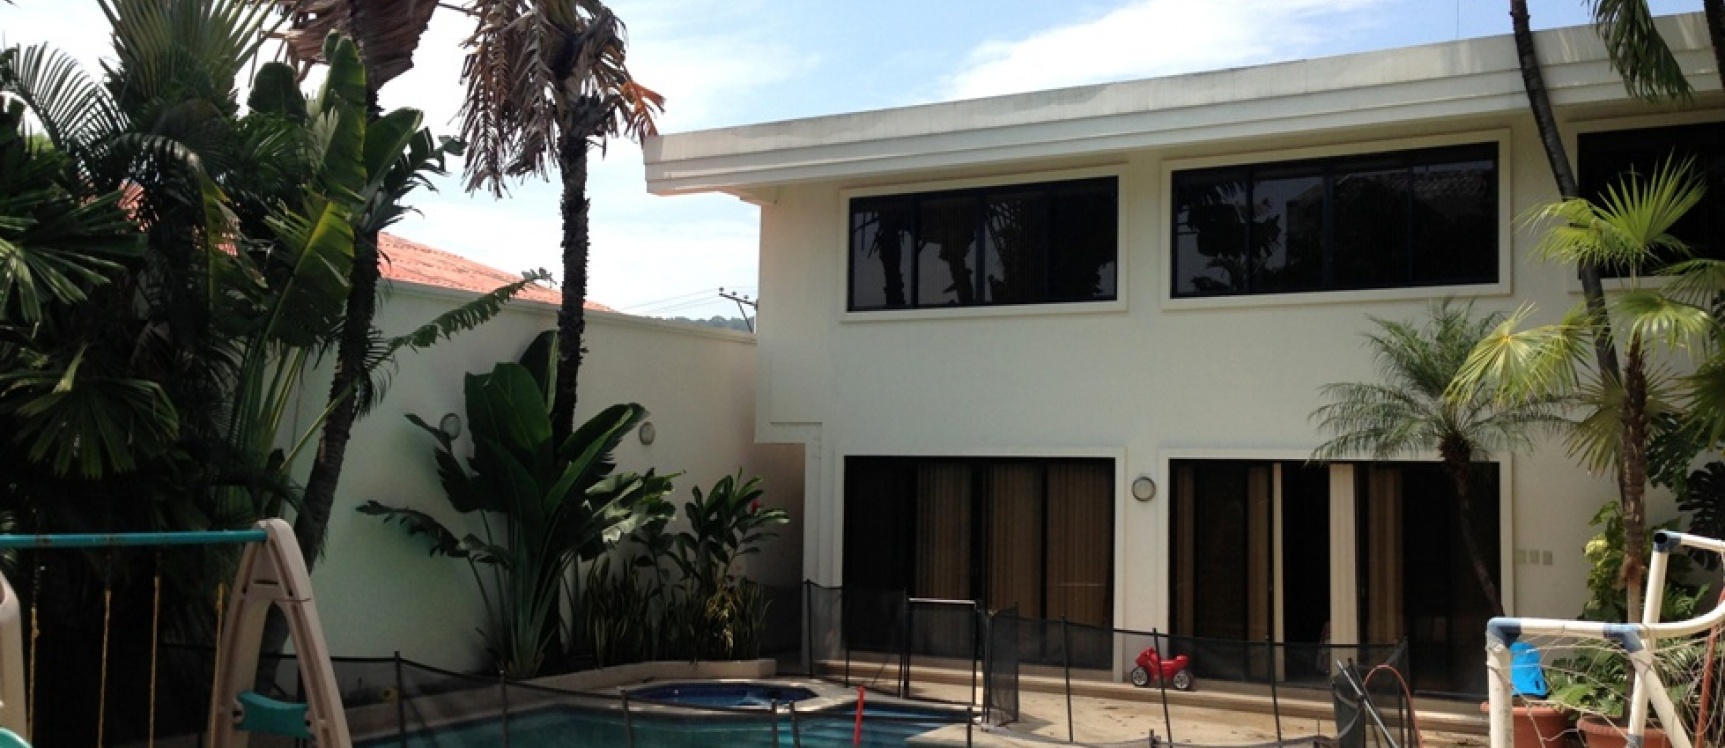 GeoBienes - Casa en venta en la Ciudadela Los Ceibos Guayaquil - Plusvalia Guayaquil Casas de venta y alquiler Inmobiliaria Ecuador